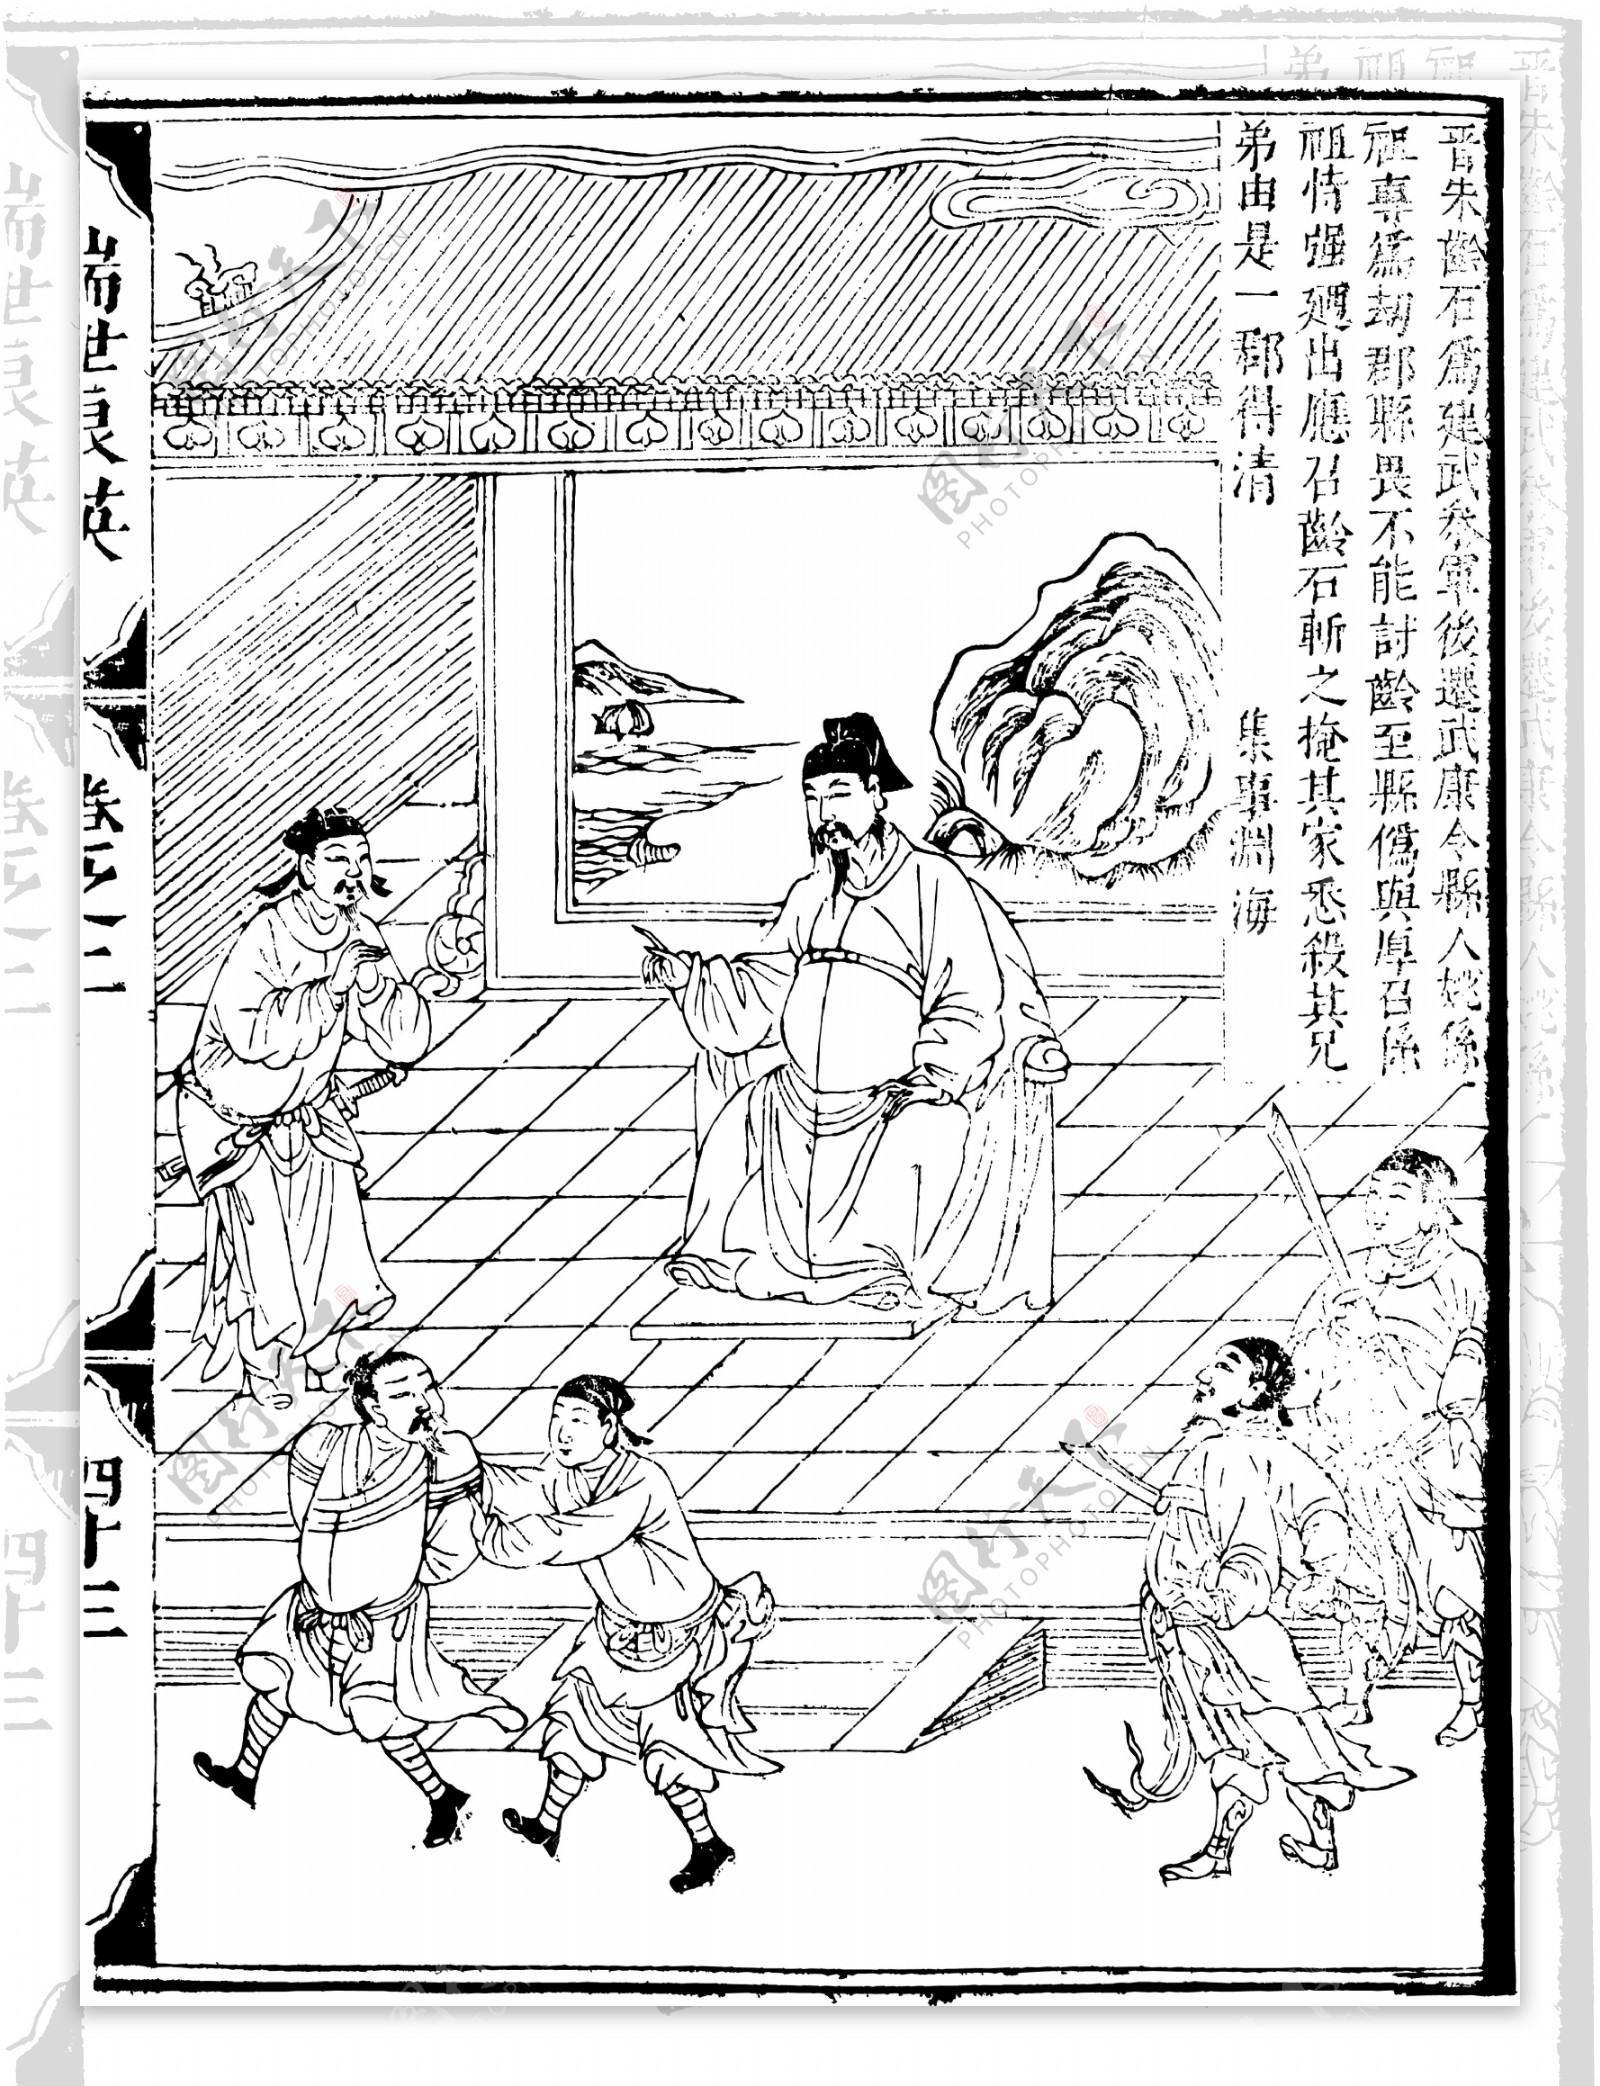 瑞世良英木刻版画中国传统文化17